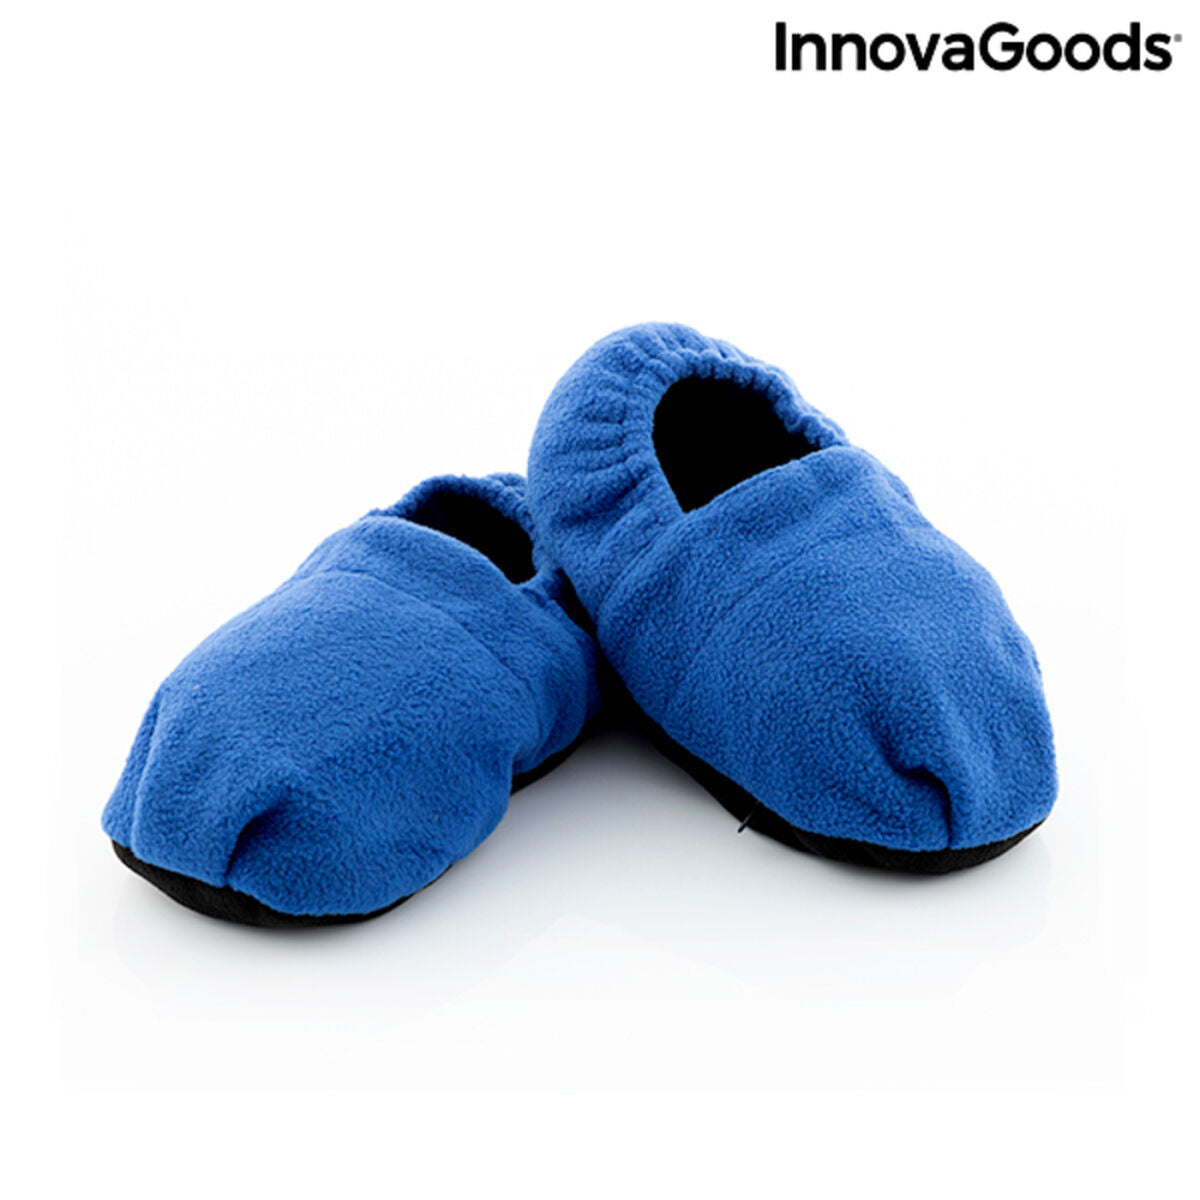 Verwarde slippers, op te warmen in de magnetron InnovaGoods Blauw